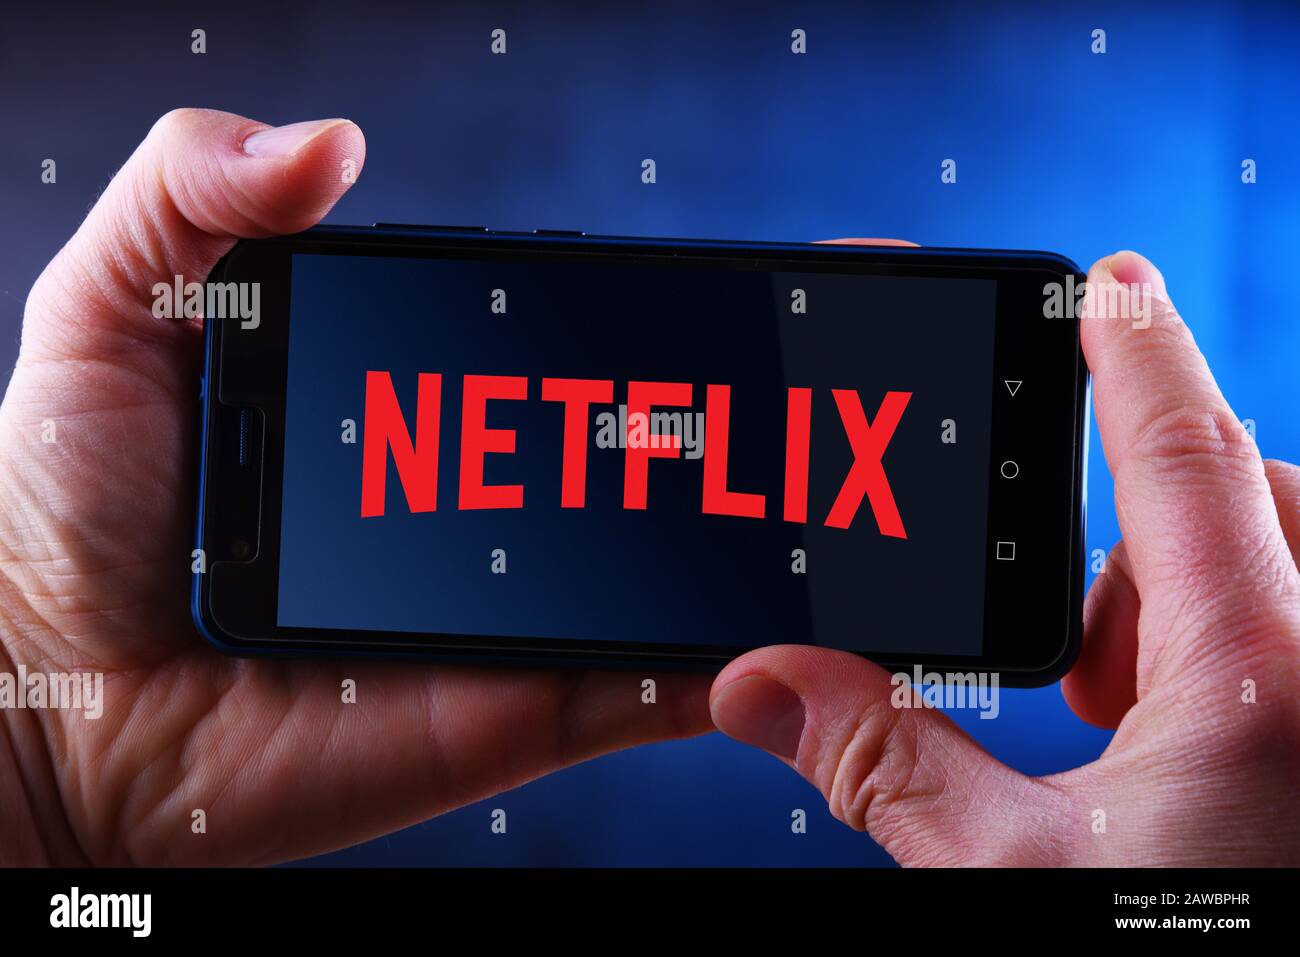 Poznan, POL - 24 MARS 2019: Main tenant smartphone affichant le logo de Netflix, un fournisseur américain de services de médias dont le siège social se trouve à Los Gatos, Californie Banque D'Images